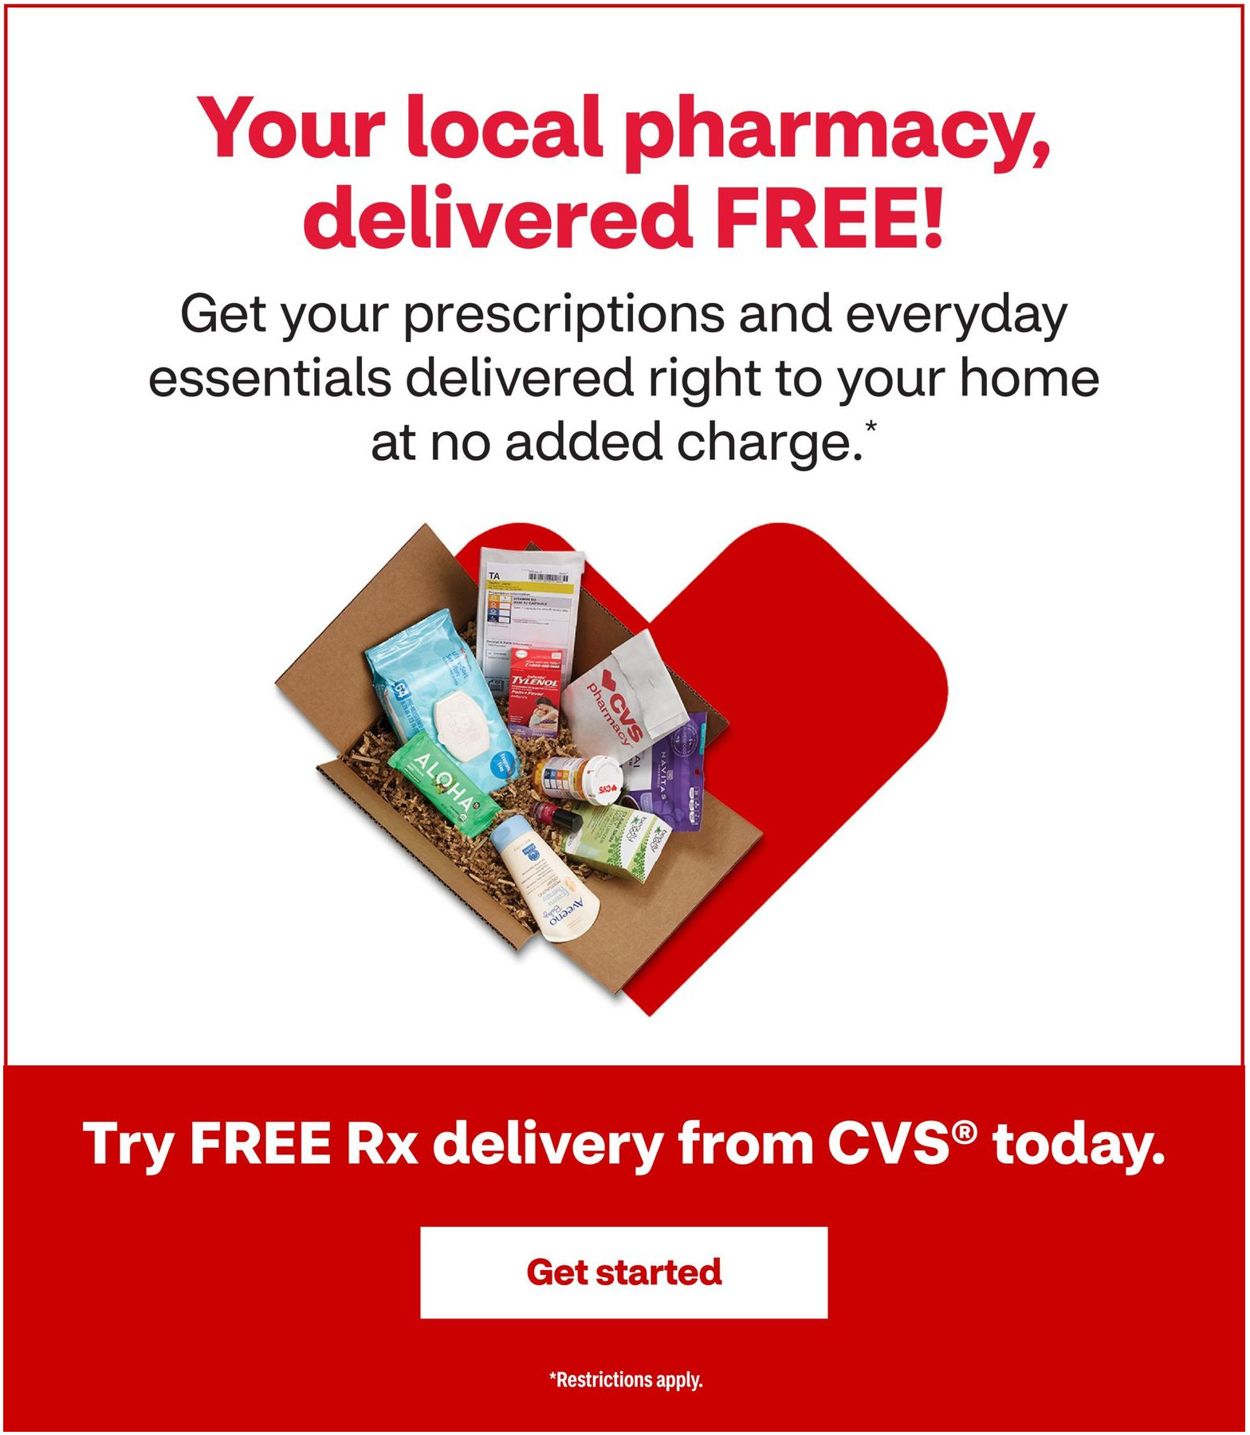 Catalogue CVS Pharmacy from 11/15/2020